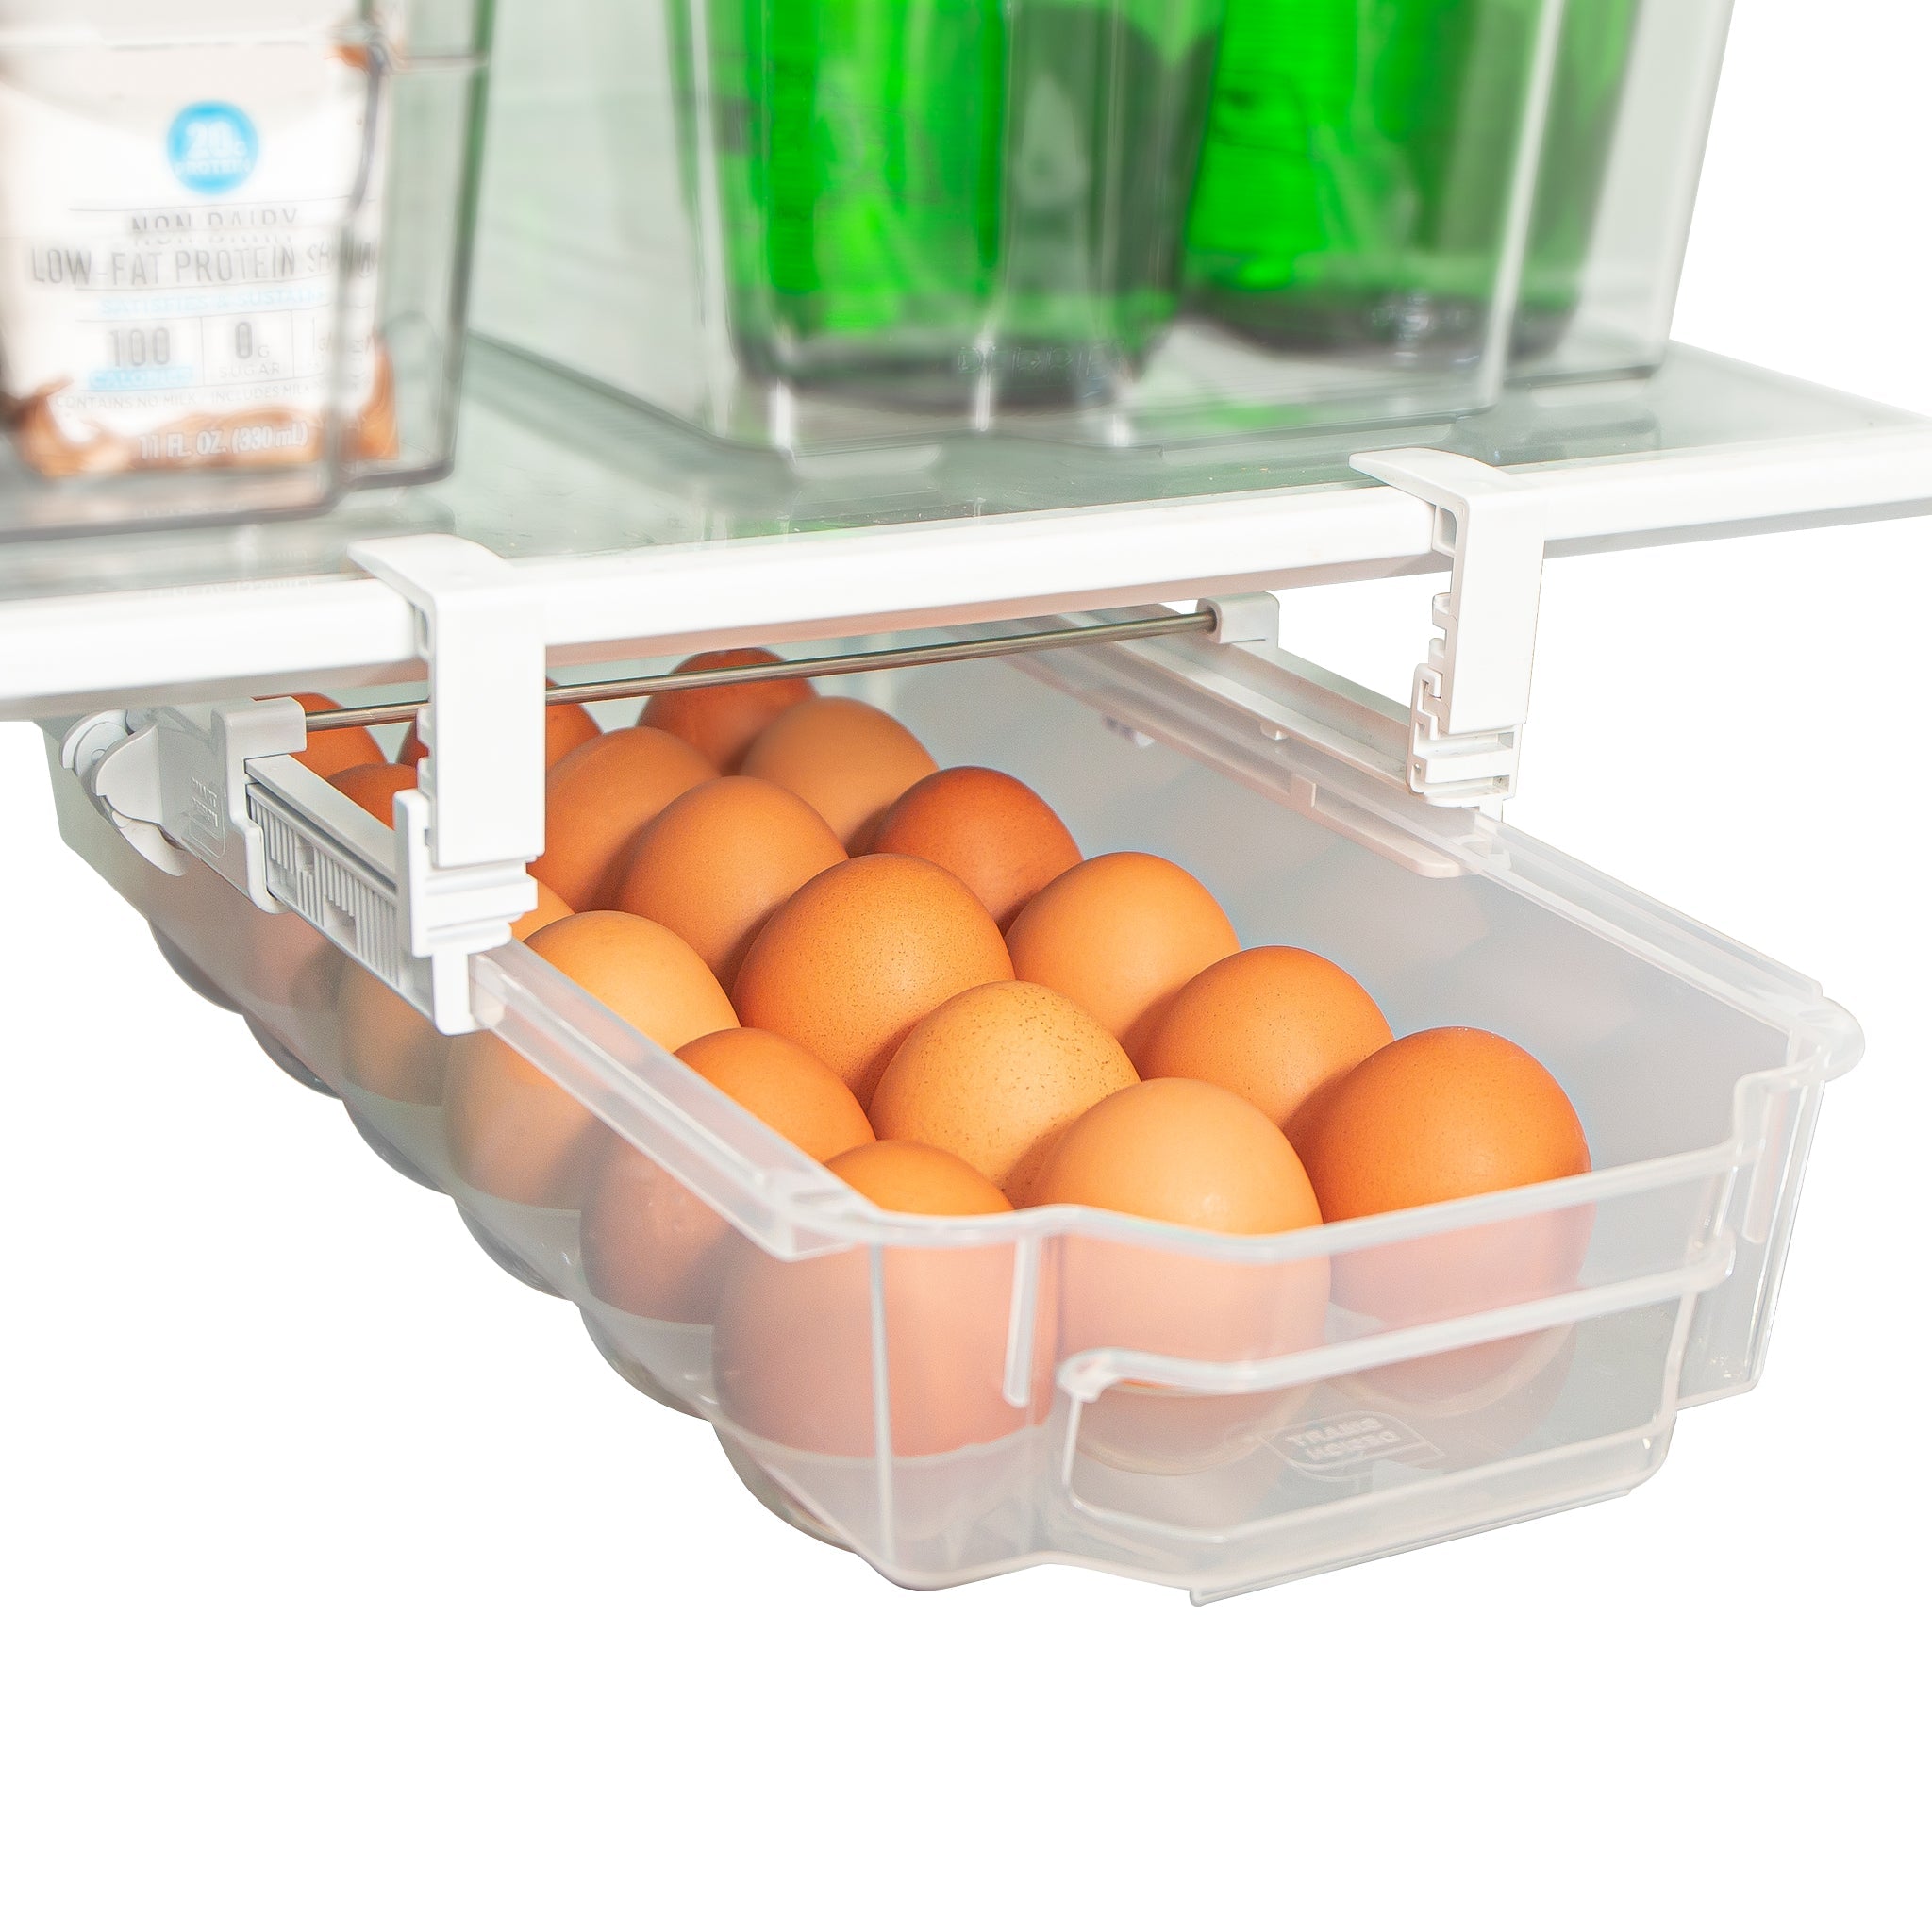 https://www.shopsmartdesign.com/cdn/shop/products/sliding-egg-drawer-with-extendable-rails-holds-18-eggs-smart-design-kitchen-8446498-incrementing-number-274615.jpg?v=1679337199